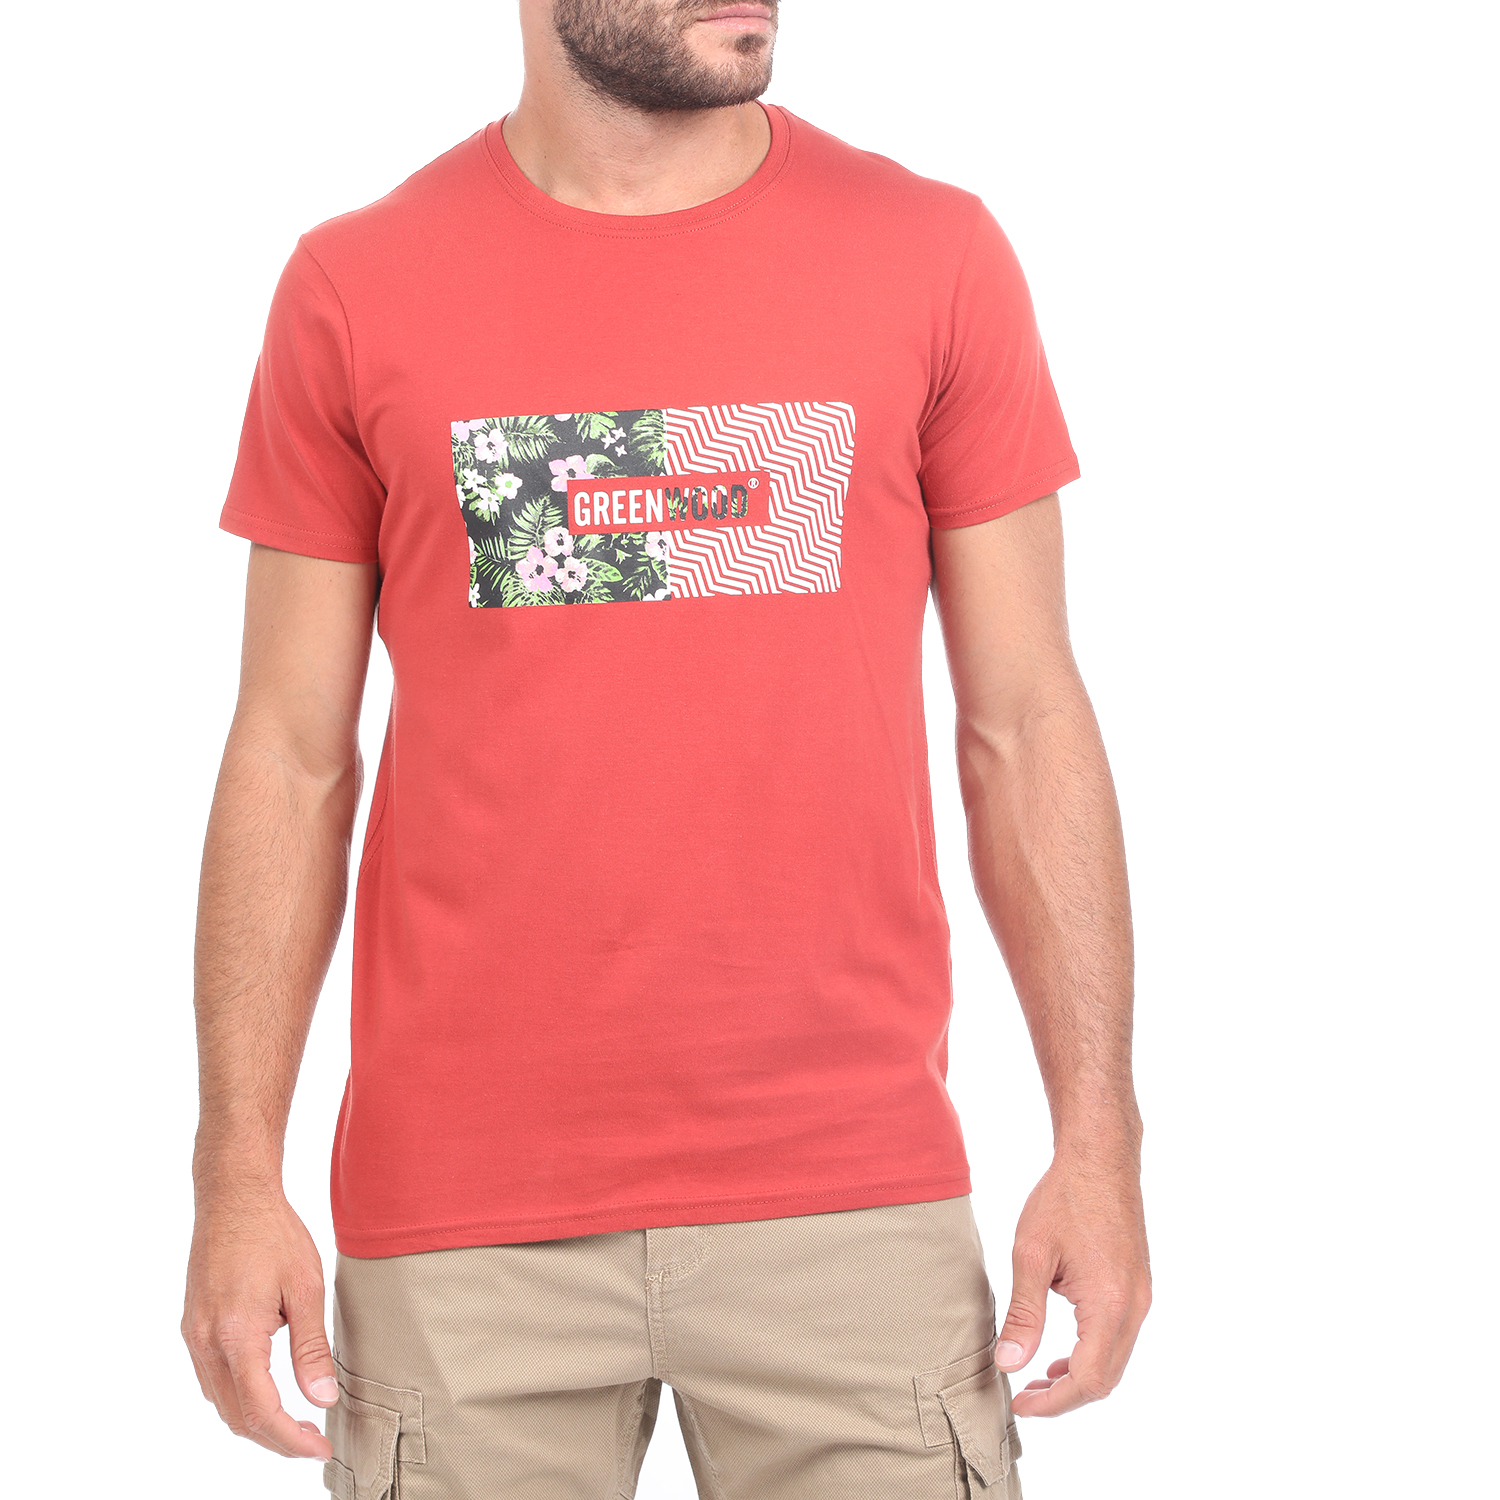 Ανδρικά/Ρούχα/Μπλούζες/Κοντομάνικες GREENWOOD - Ανδρική κοντομάνικη μπλούζα GREENWOOD κόκκινη